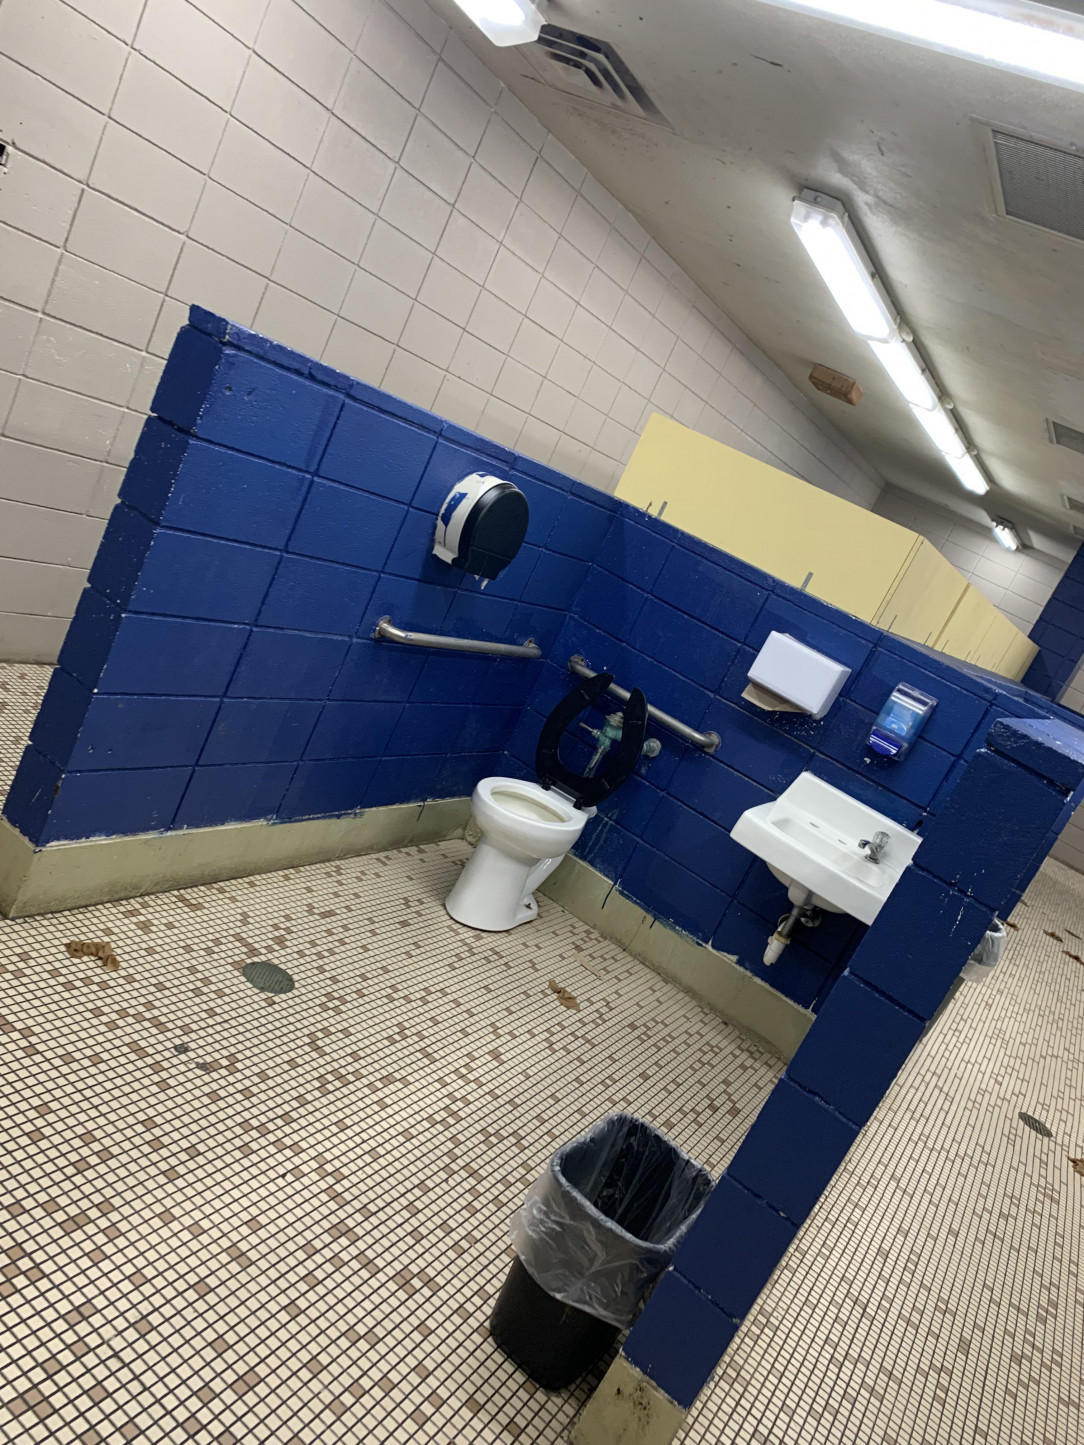 This toilet